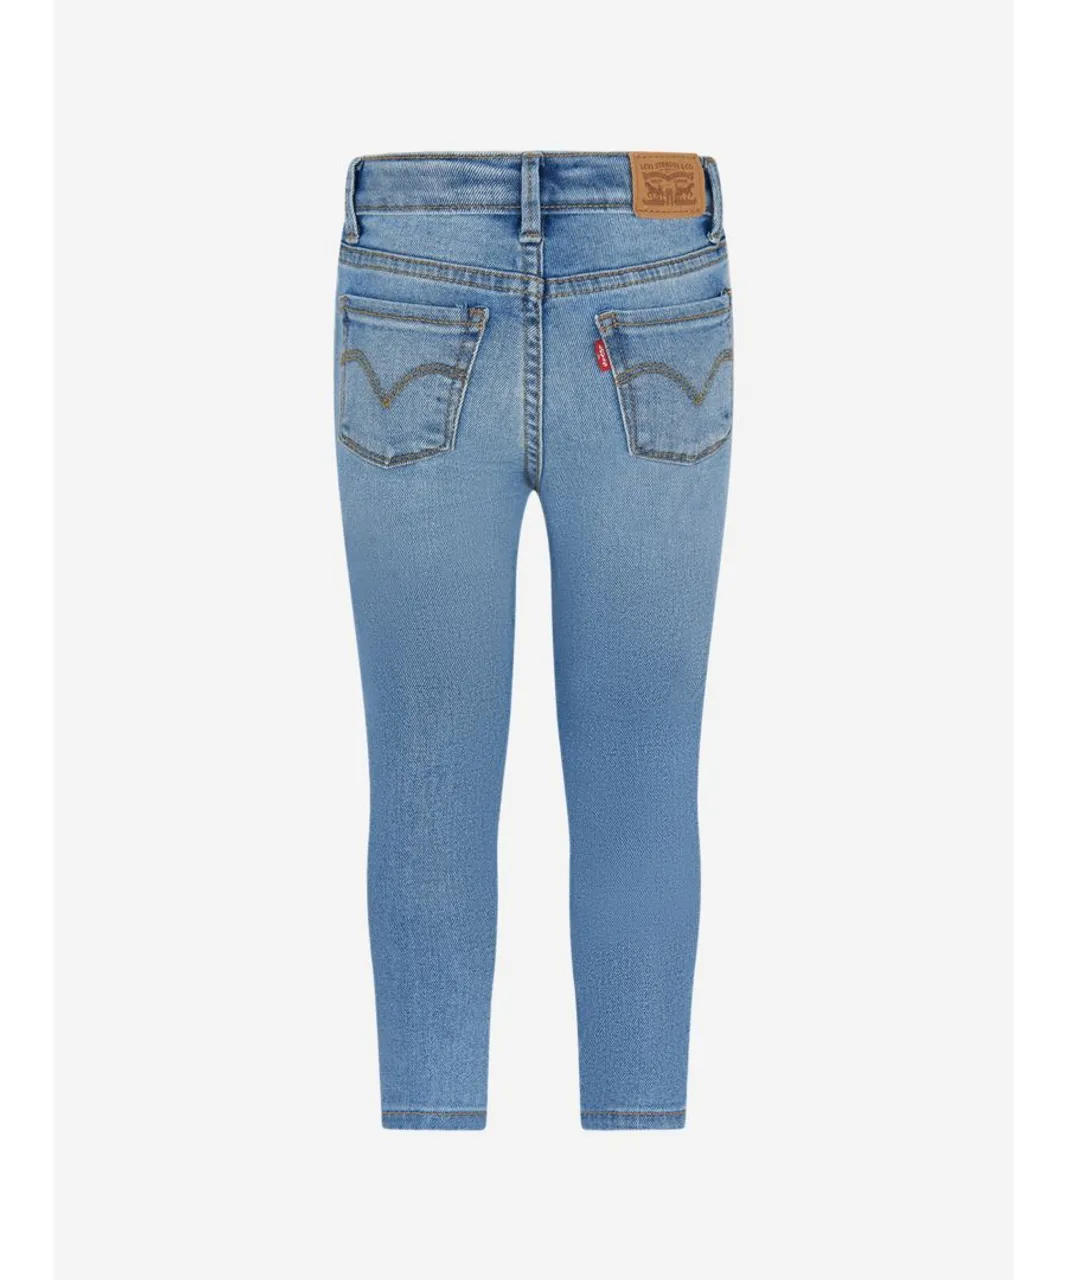 Levi's Kids Wear Girls 710 Super Skinny Jeans in Blue